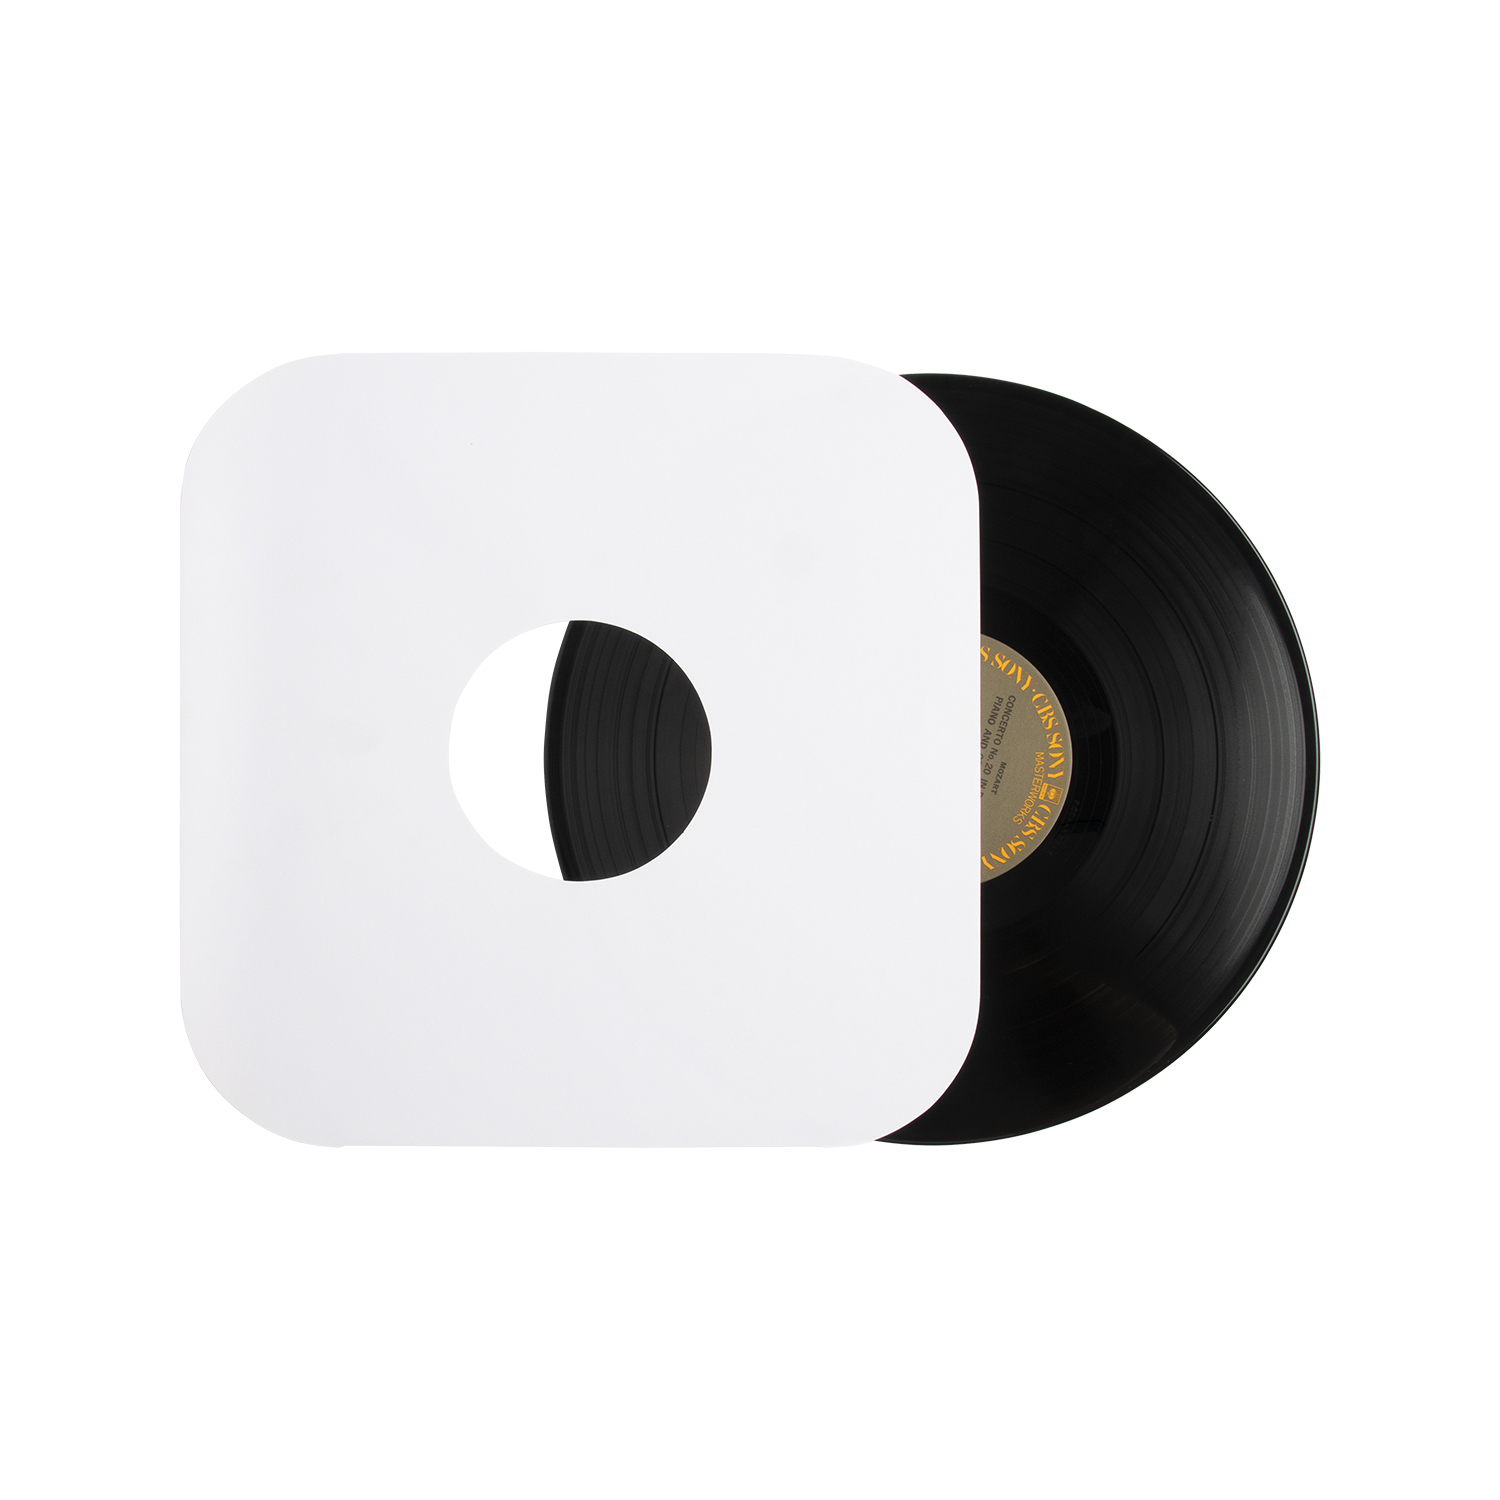 Άσπρα/μαύρα/έγχρωμα εσωτερικά μανίκια χαρτιού LP με στρογγυλή γωνία